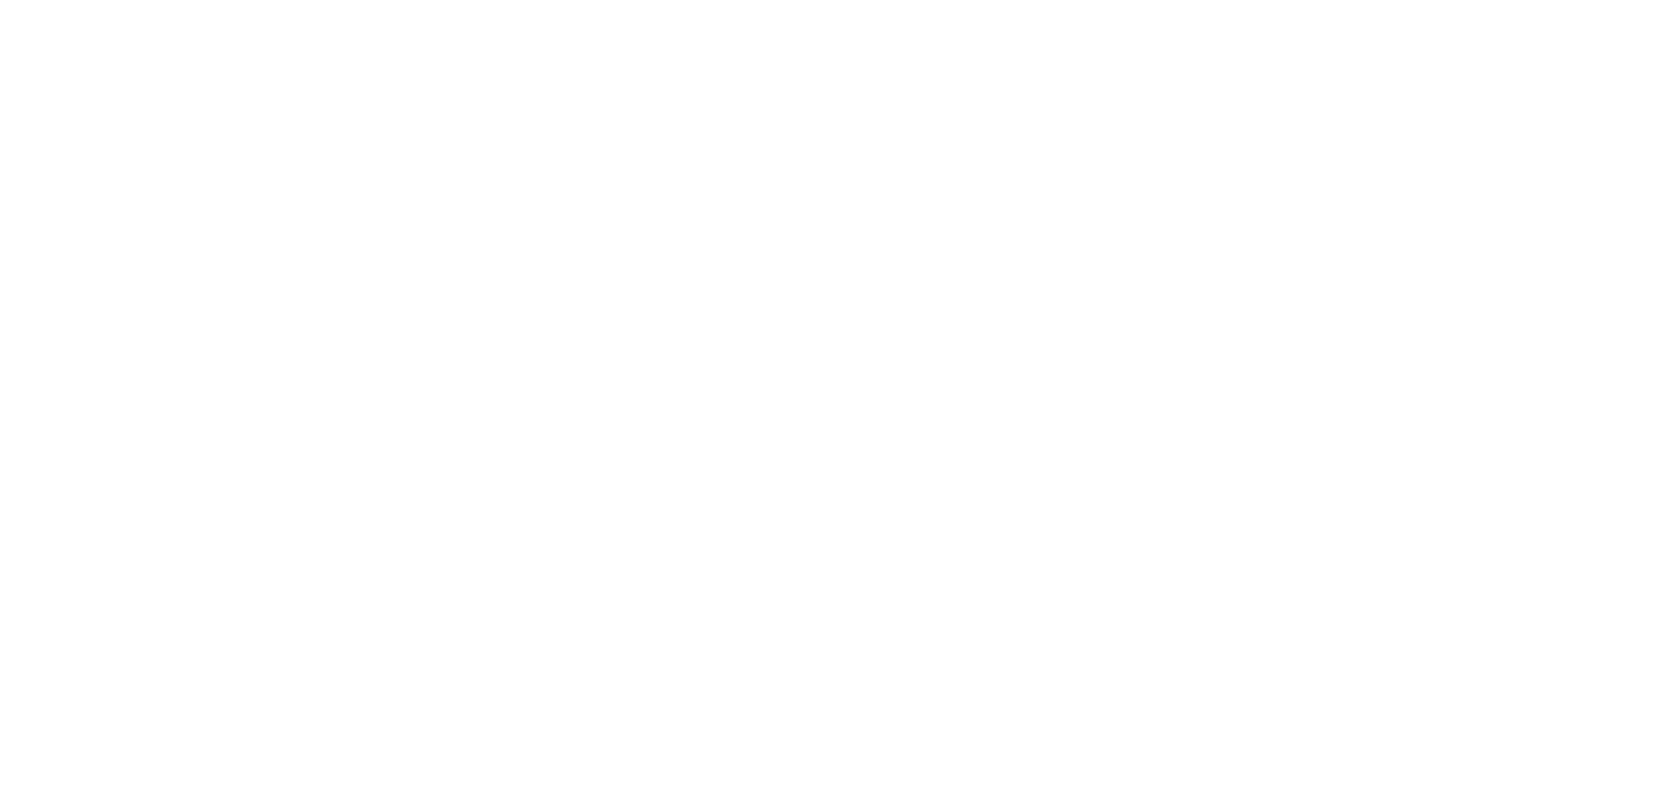 Orpea logo large for dark backgrounds (transparent PNG)